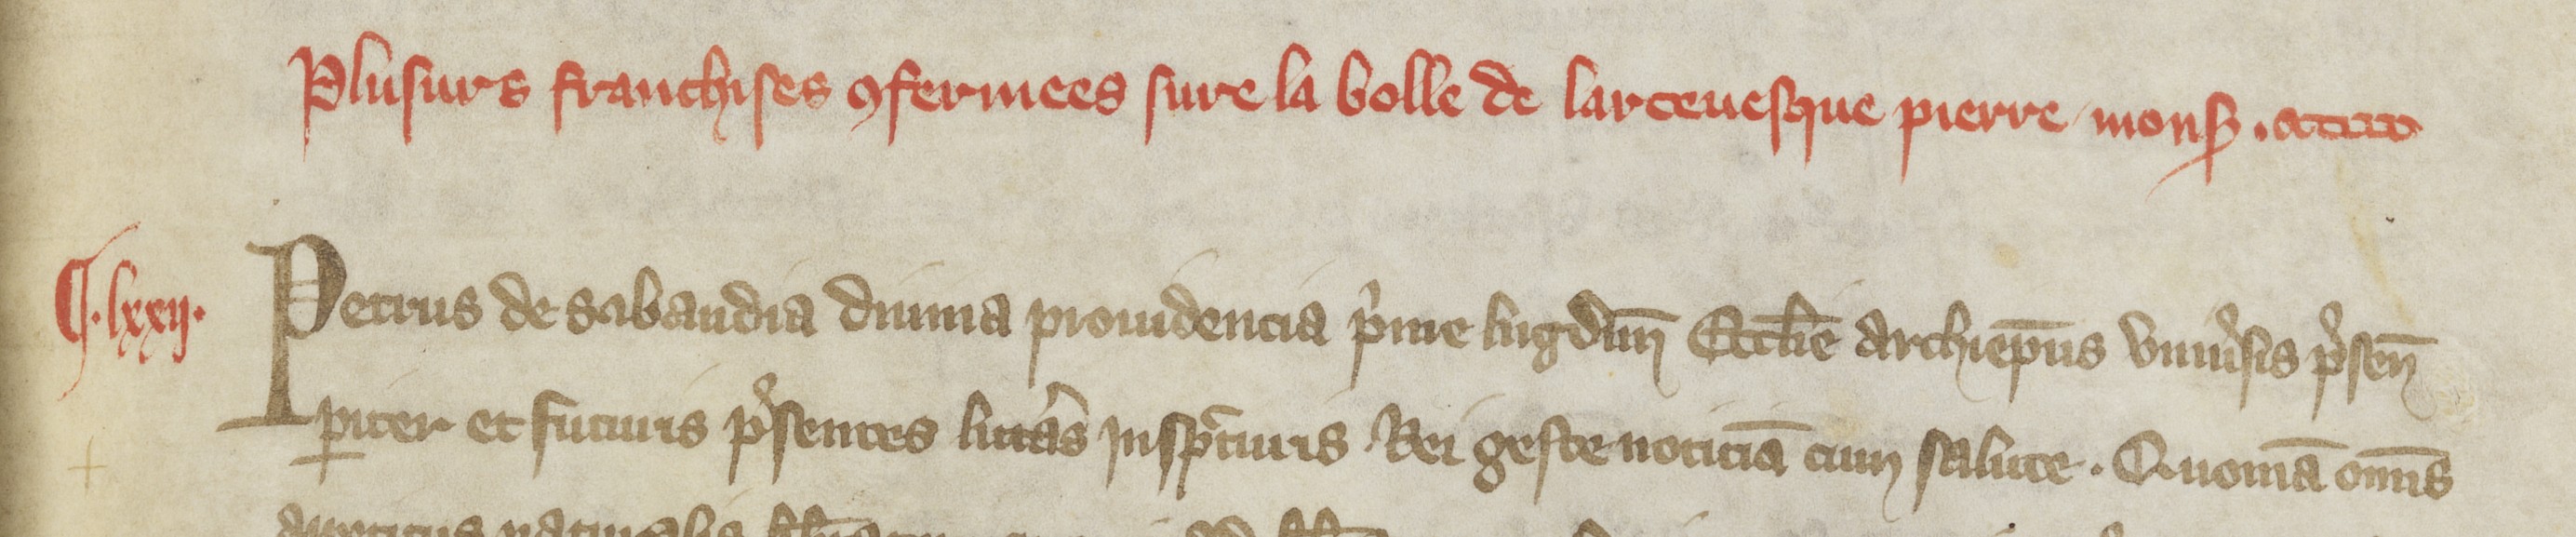 Prologue de la charte sapaudine du 21/06/1320 par Pierre de Savoie (1320, cote : AA/1, folio 52r)